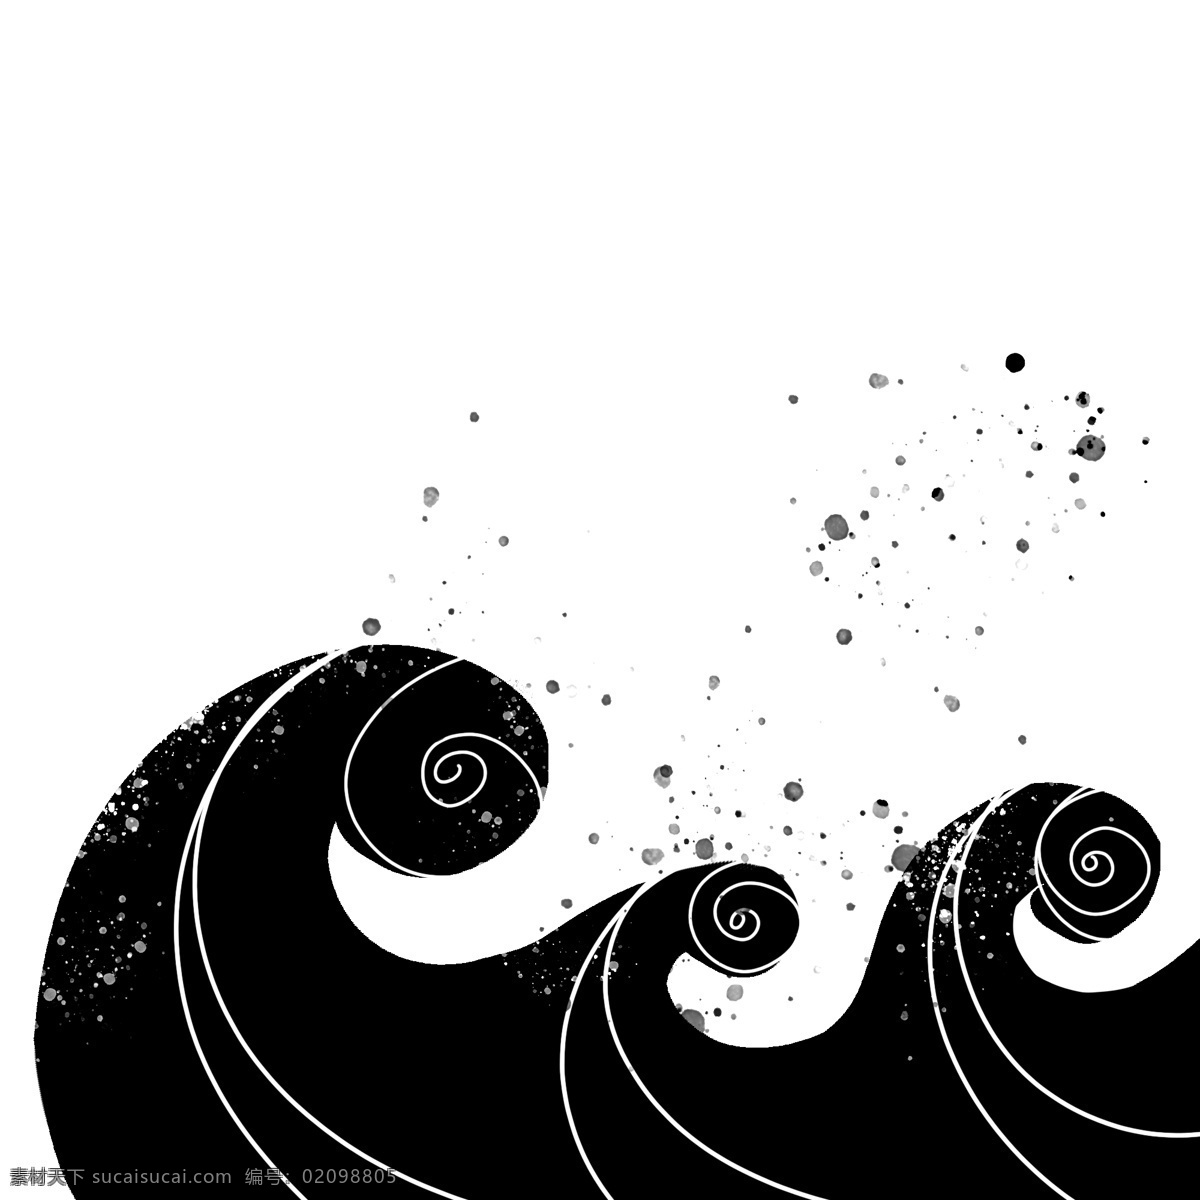 黑色 手绘 通用 波浪 装饰 海洋 海浪 大海 浪花 水滴 水花 祥云 水纹 线条 抽象 几何 极简 幻想 古典 科技 旅行 海产 海鲜